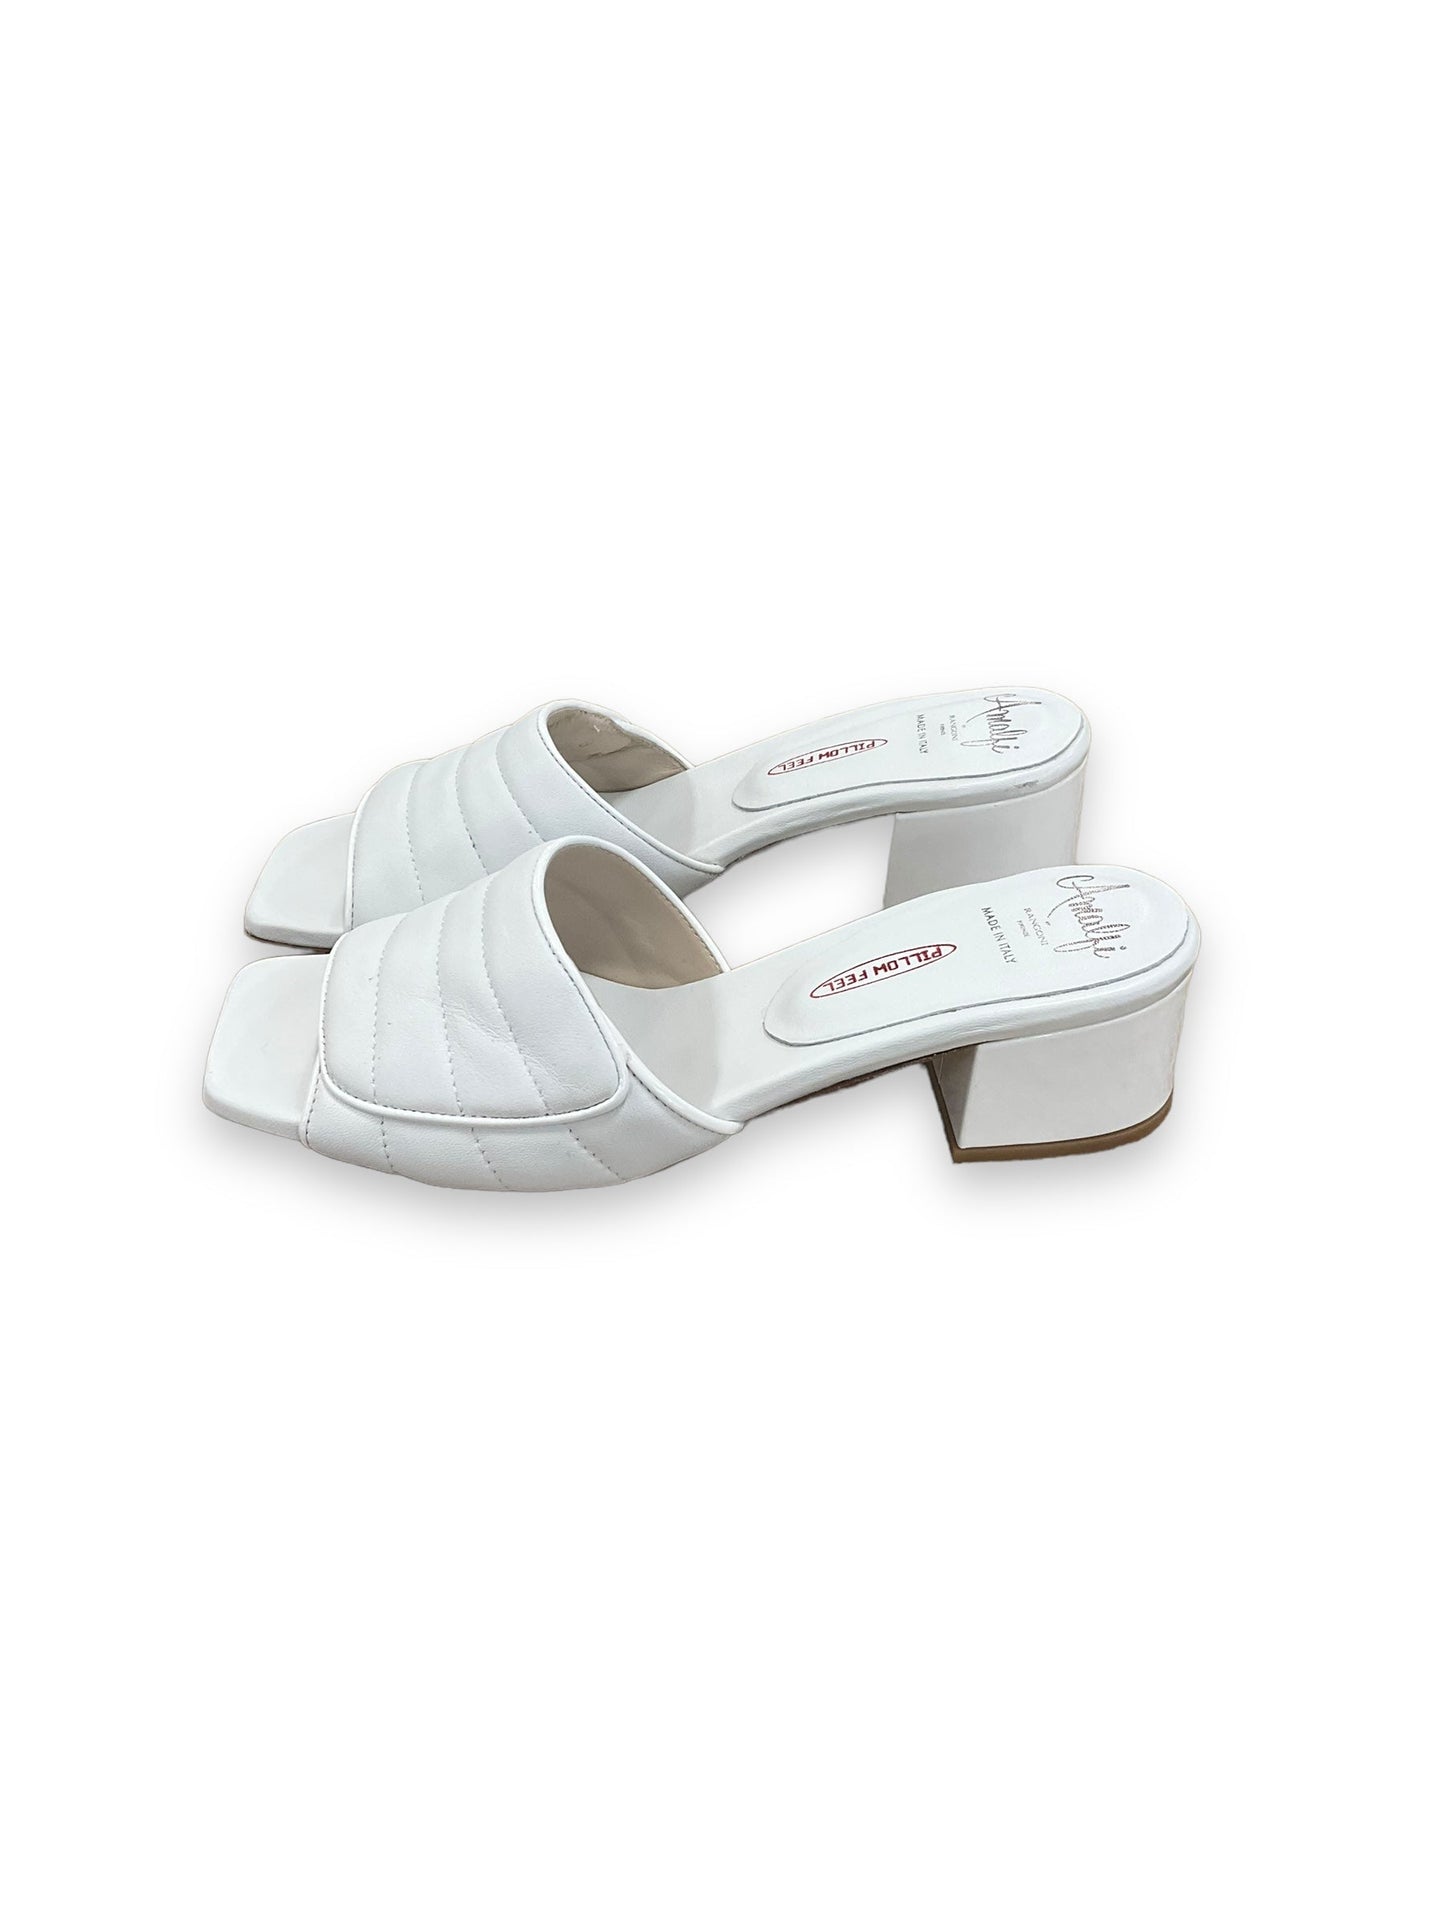 White Shoes Heels Block Amalfi, Size 8